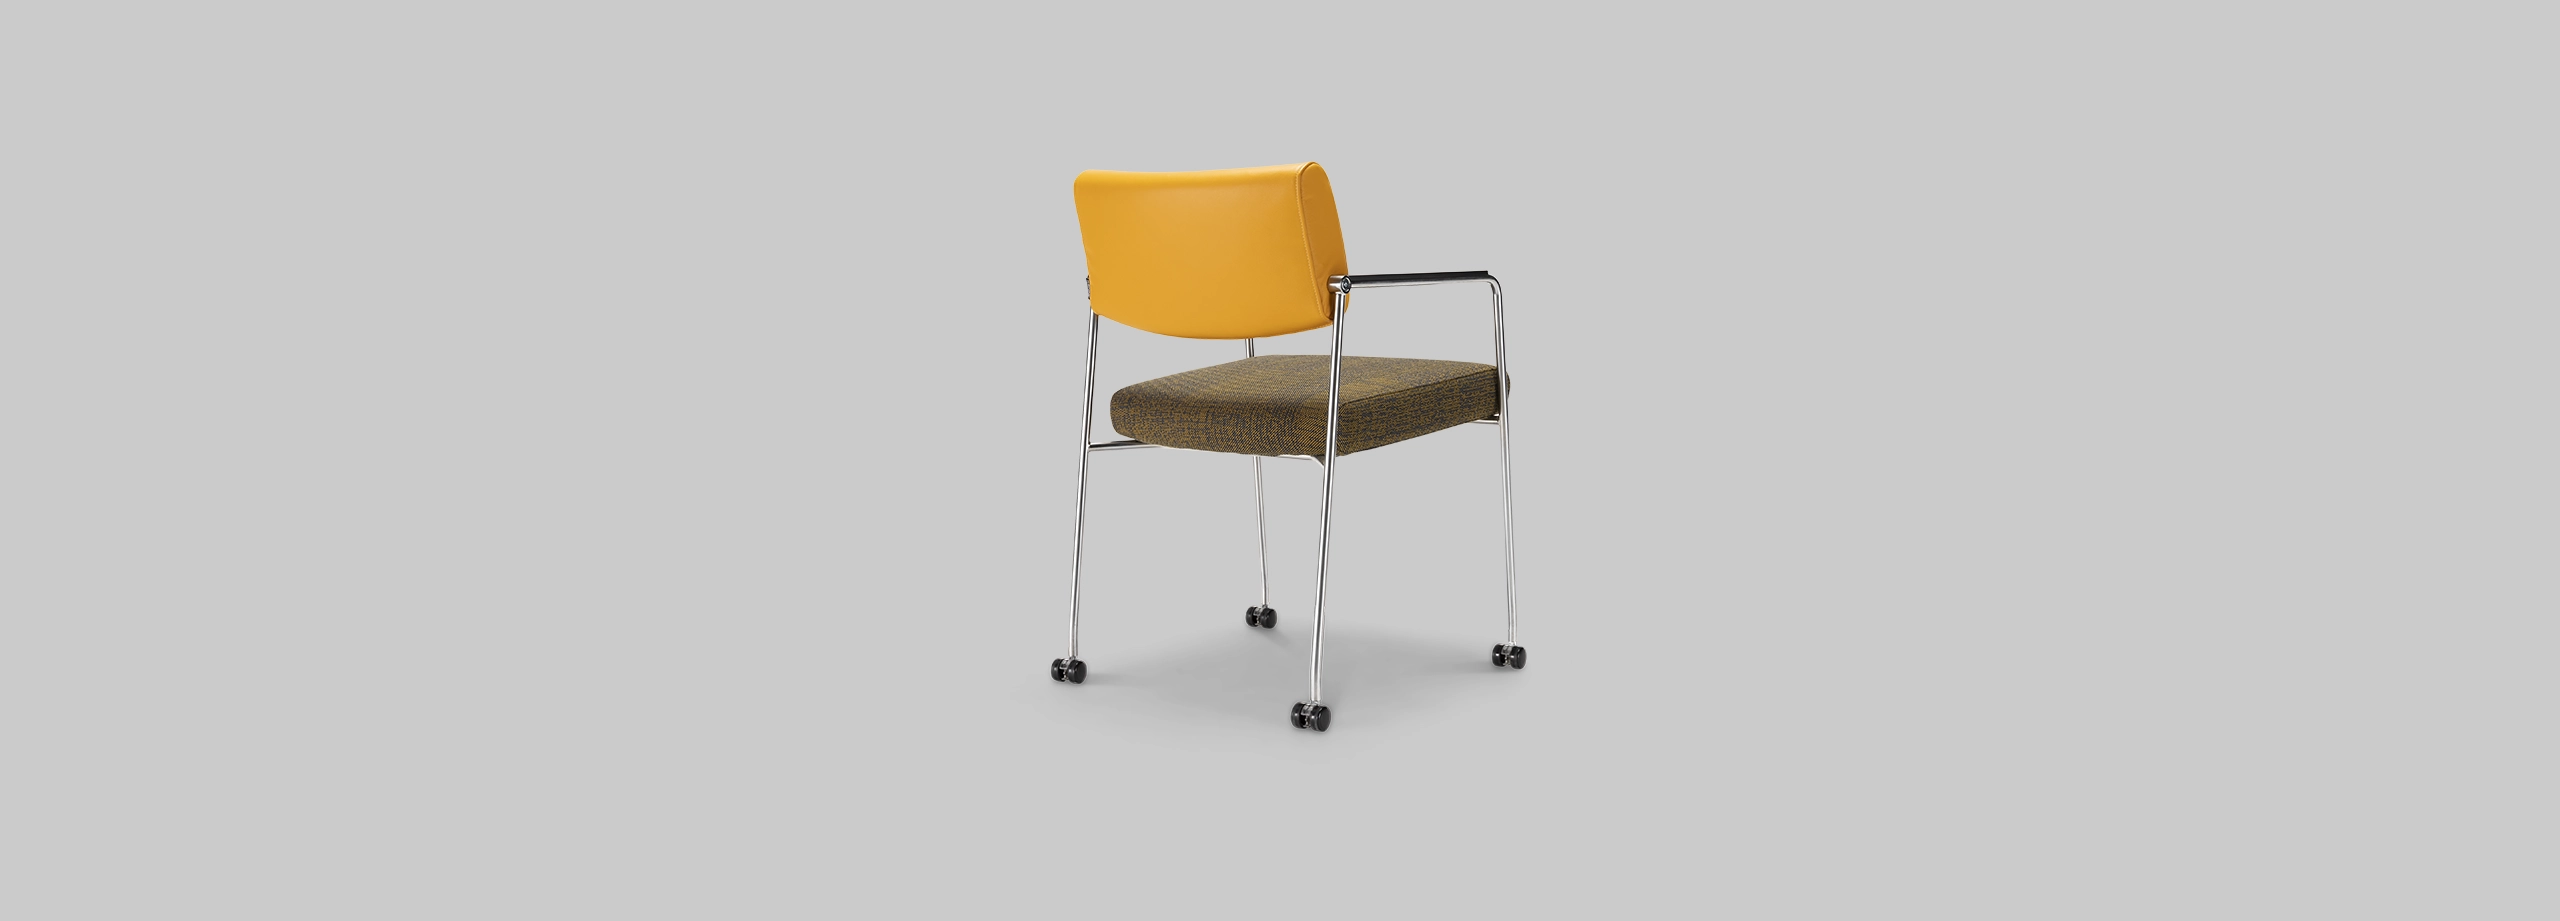 Harvink stoel Duck in combinatie leer geel en stof walker met rollerframe geschuurd chroom